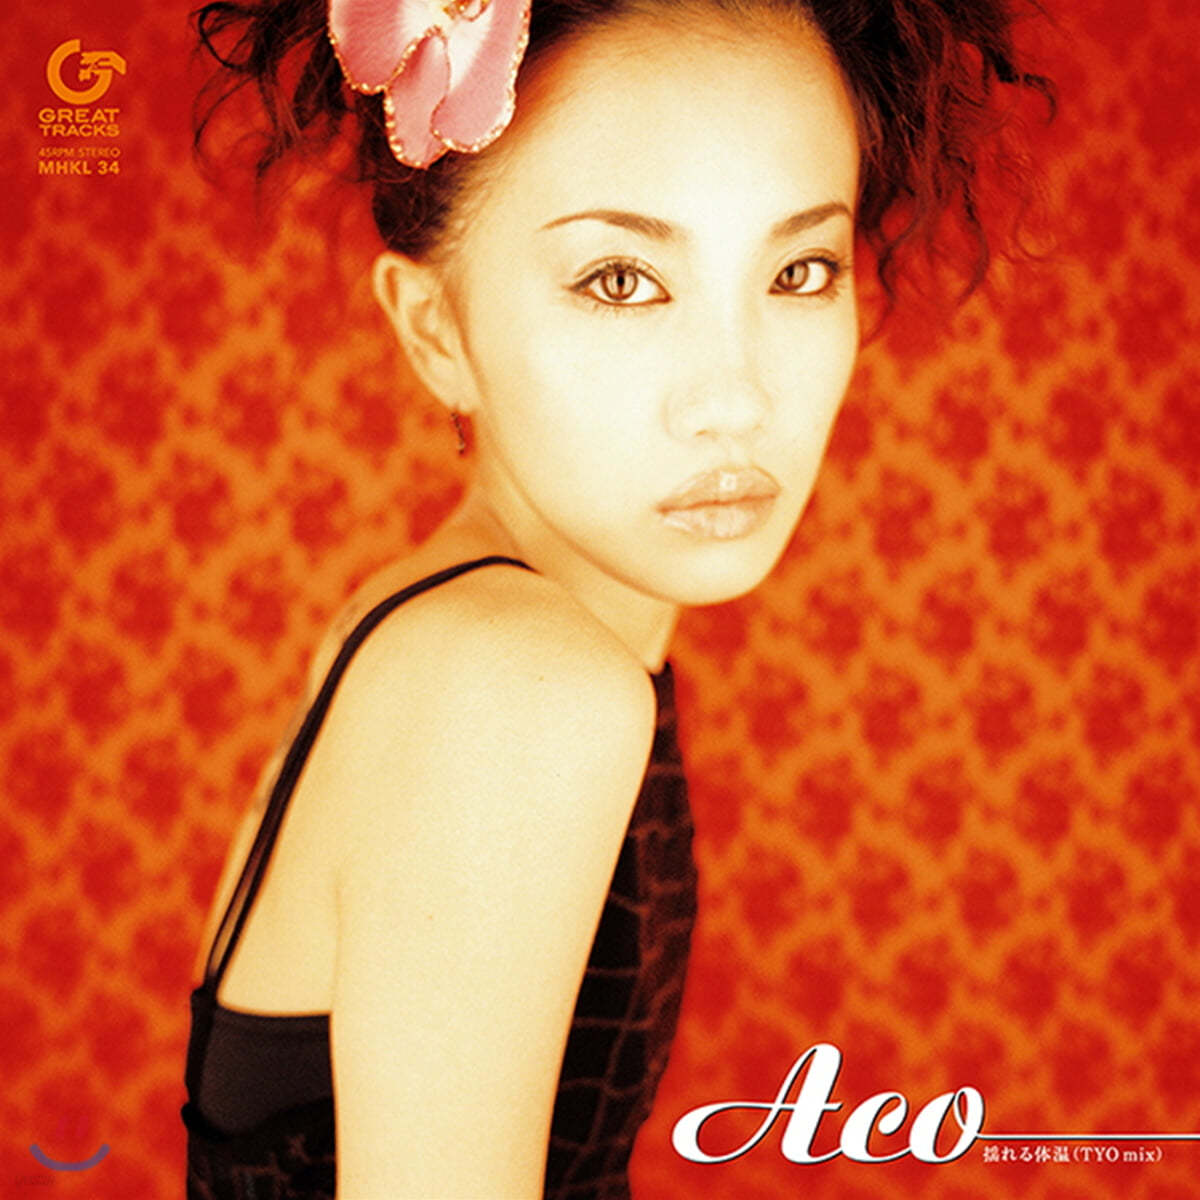 ACO (아코) - Yureru Taion (TYO Mix) [7인치 싱글 Vinyl]